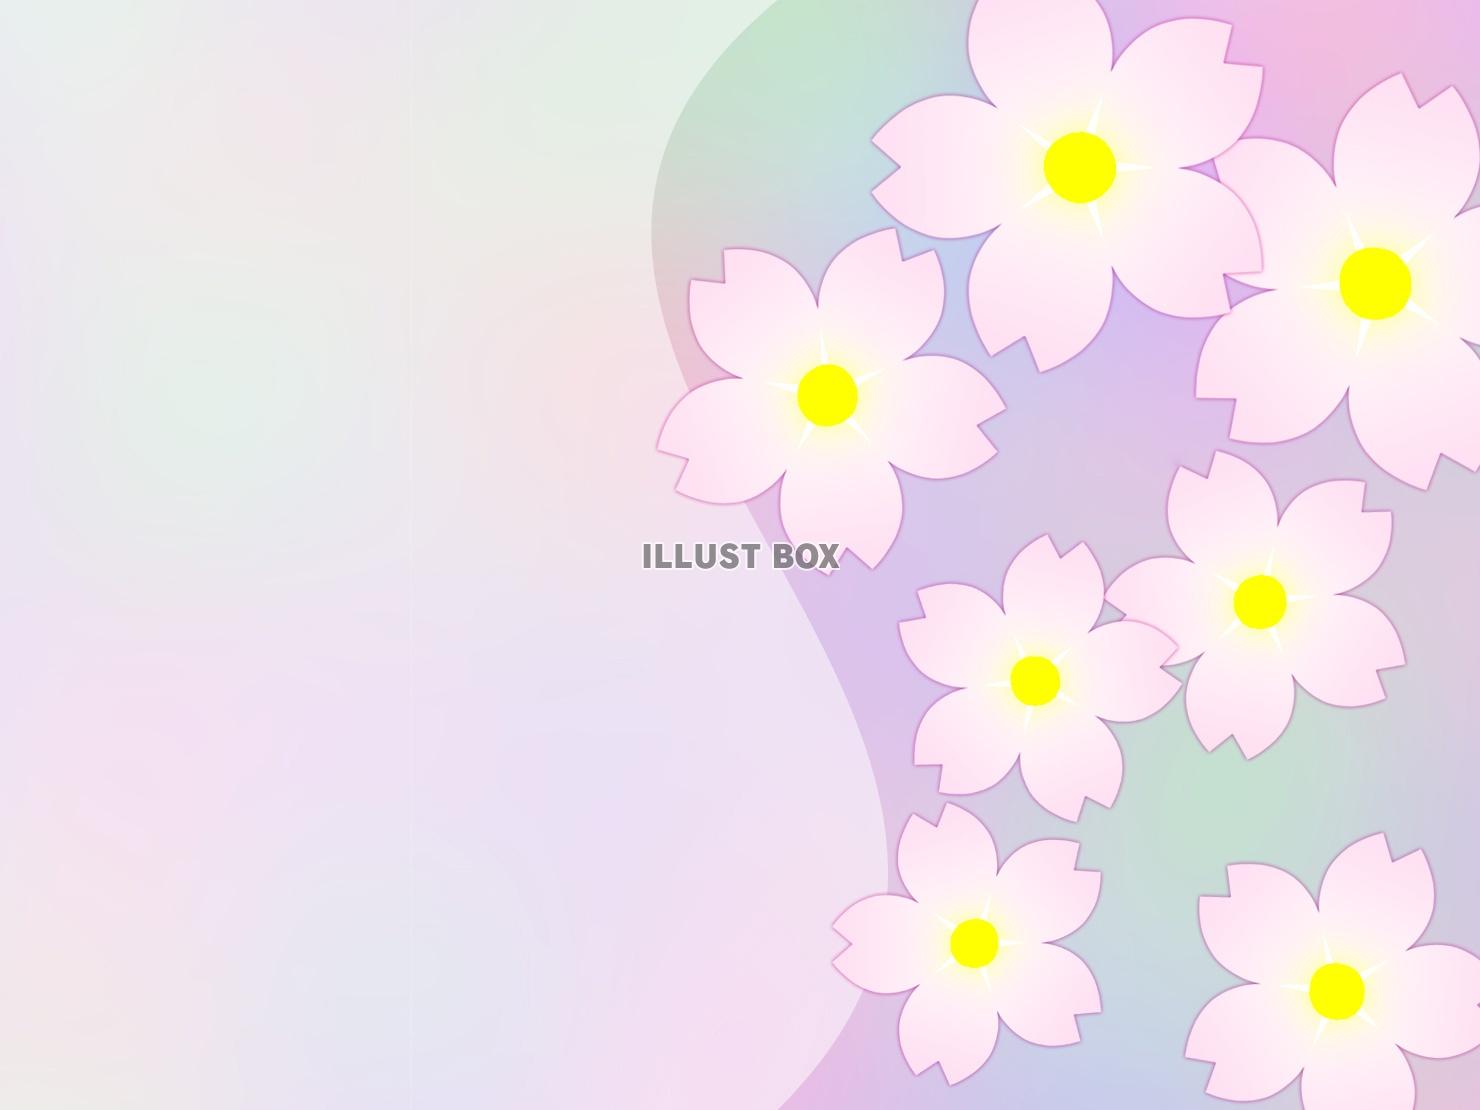 無料イラスト 桜の花模様壁紙シンプル背景素材イラスト